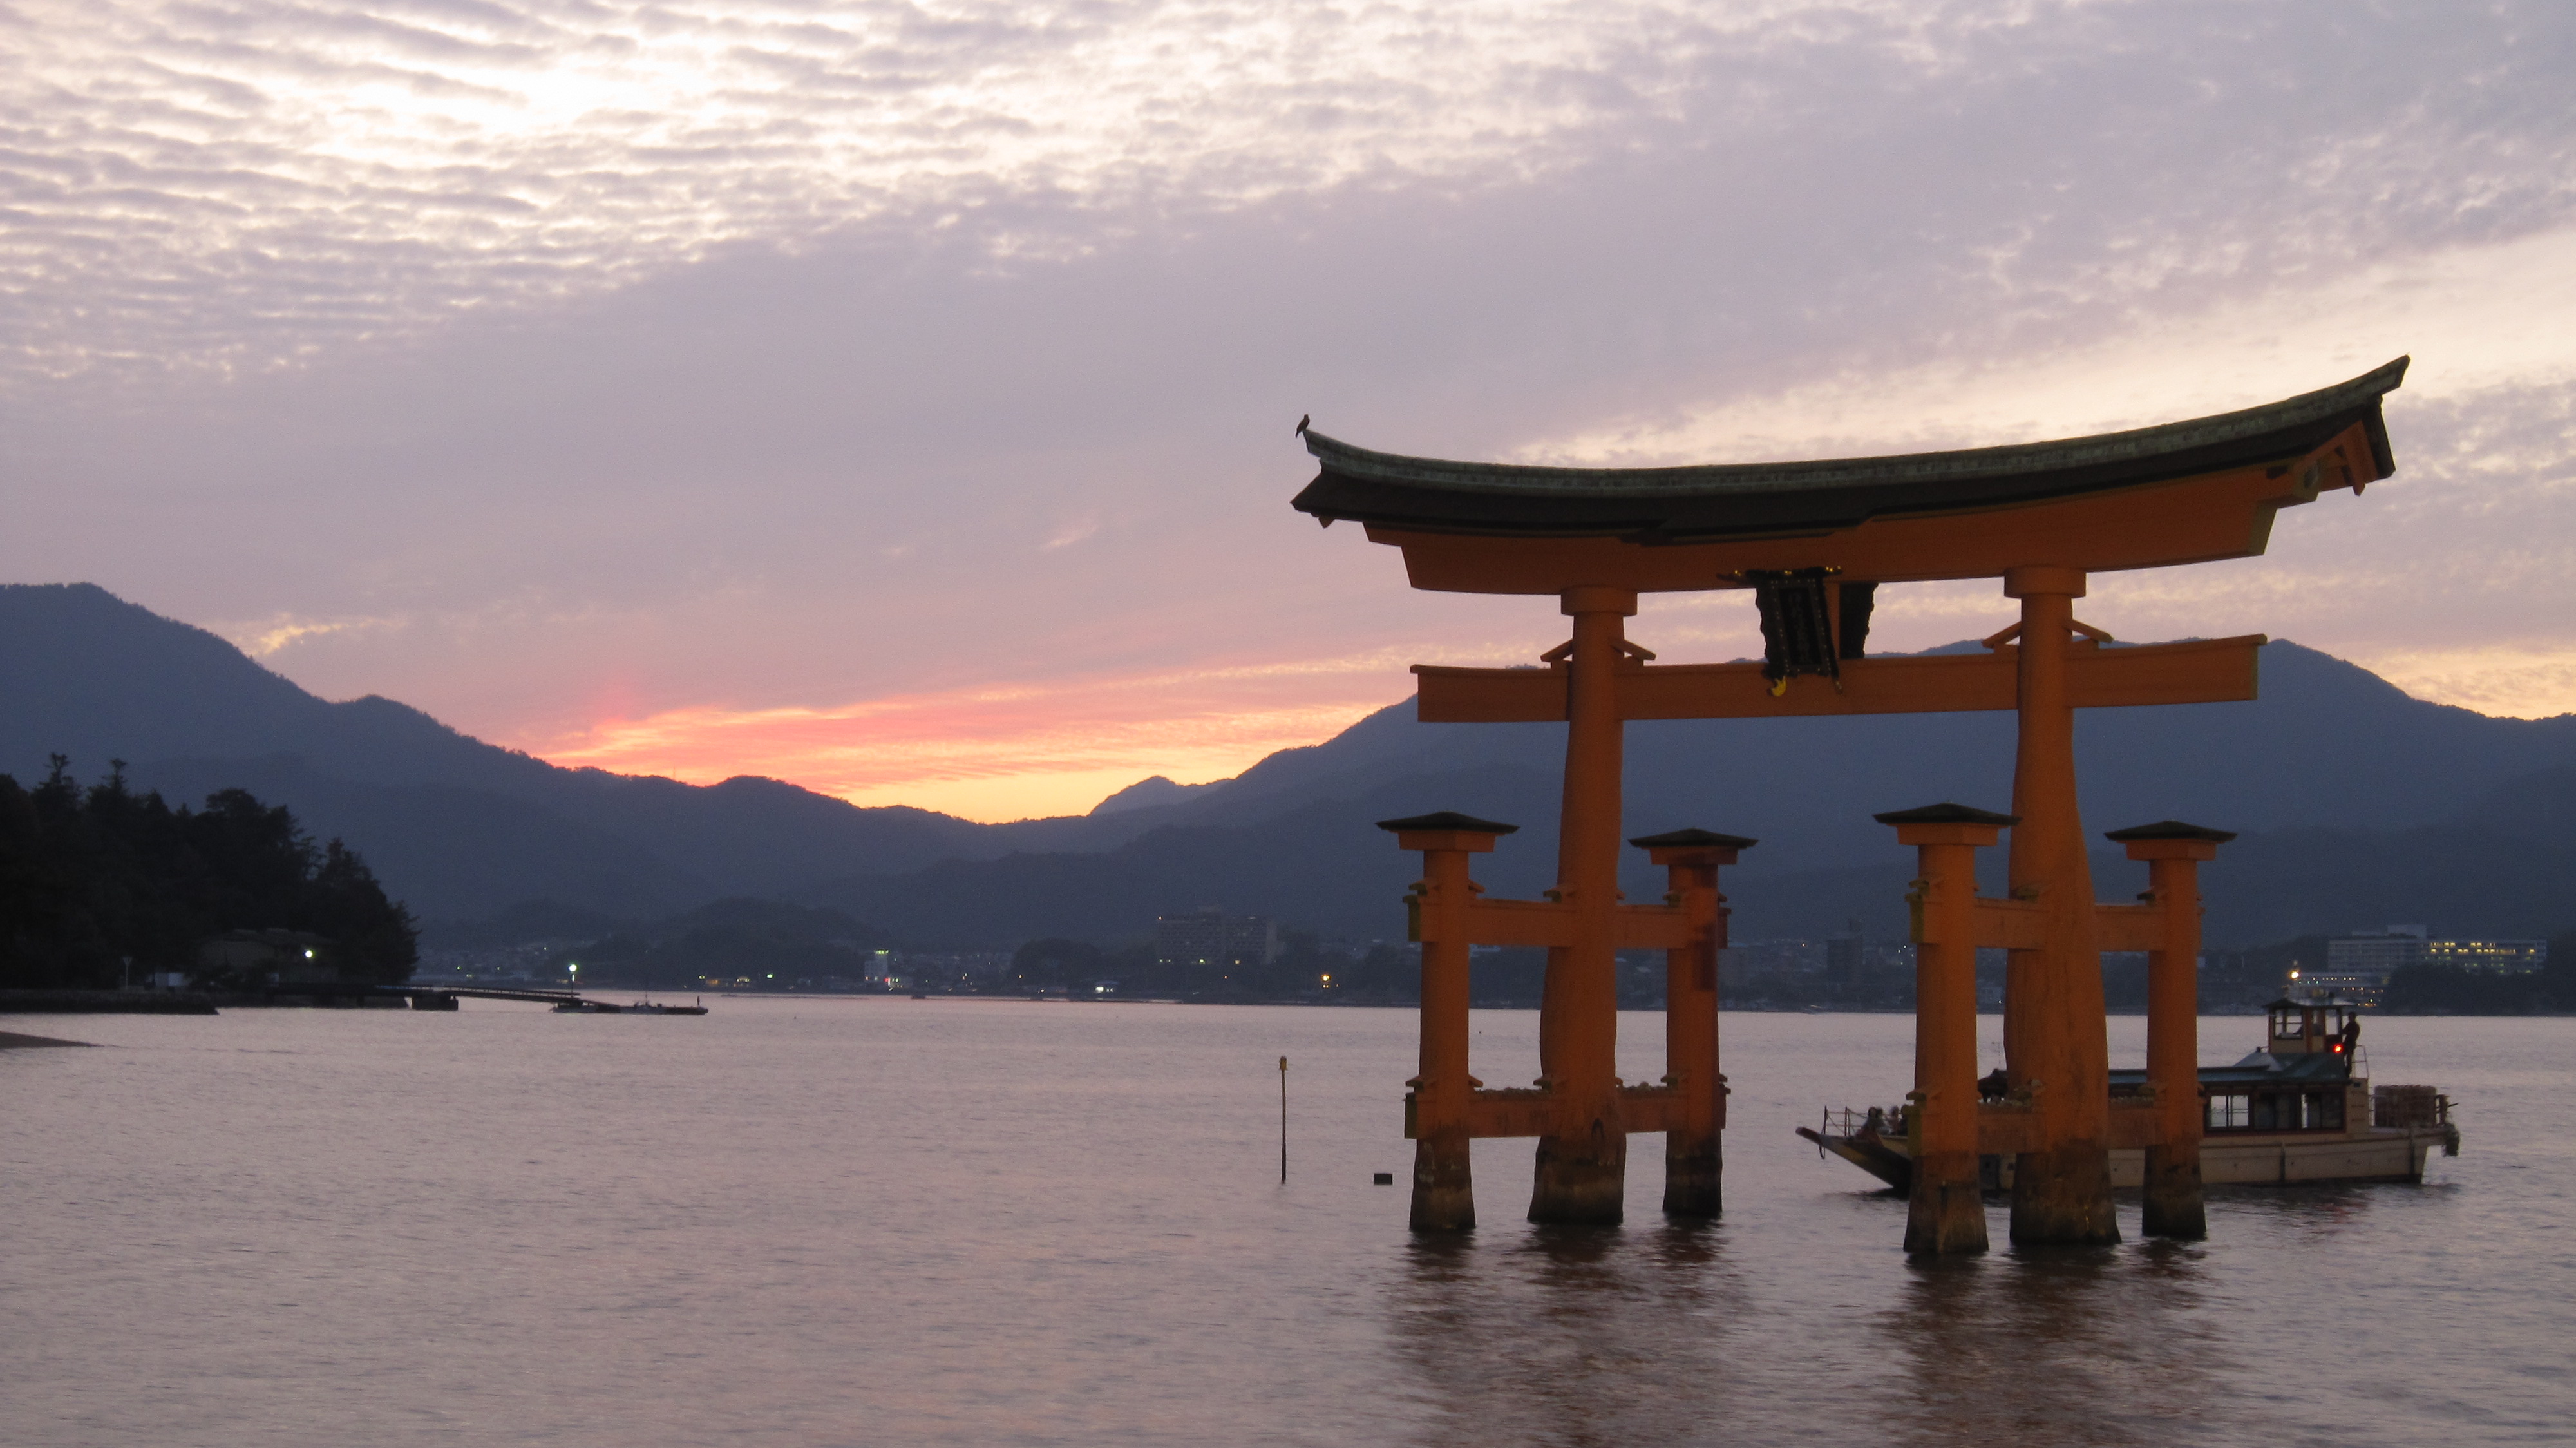 вода, Япония, горы, лодки, ворота, тории, Японский архитектура, Ицукусима - обои на рабочий стол